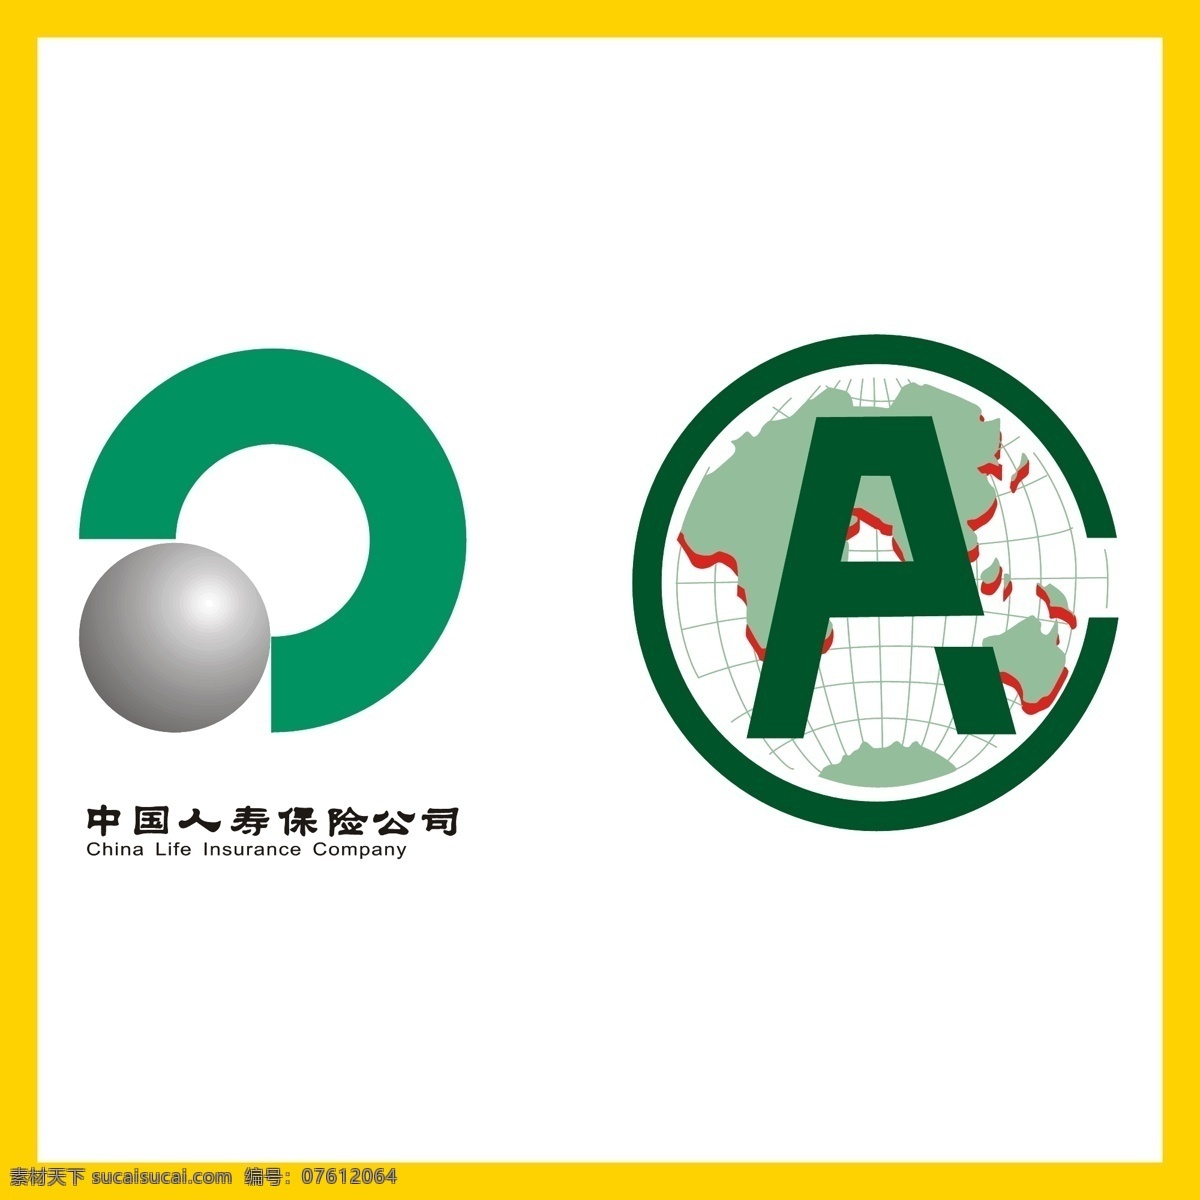 中国人寿保险公司 中国人寿保险 养老院 保证金 银行 信用卡 金融 投资理财 理财产品 贷款 国企 事业单位 logo 标志 矢量 vi logo设计